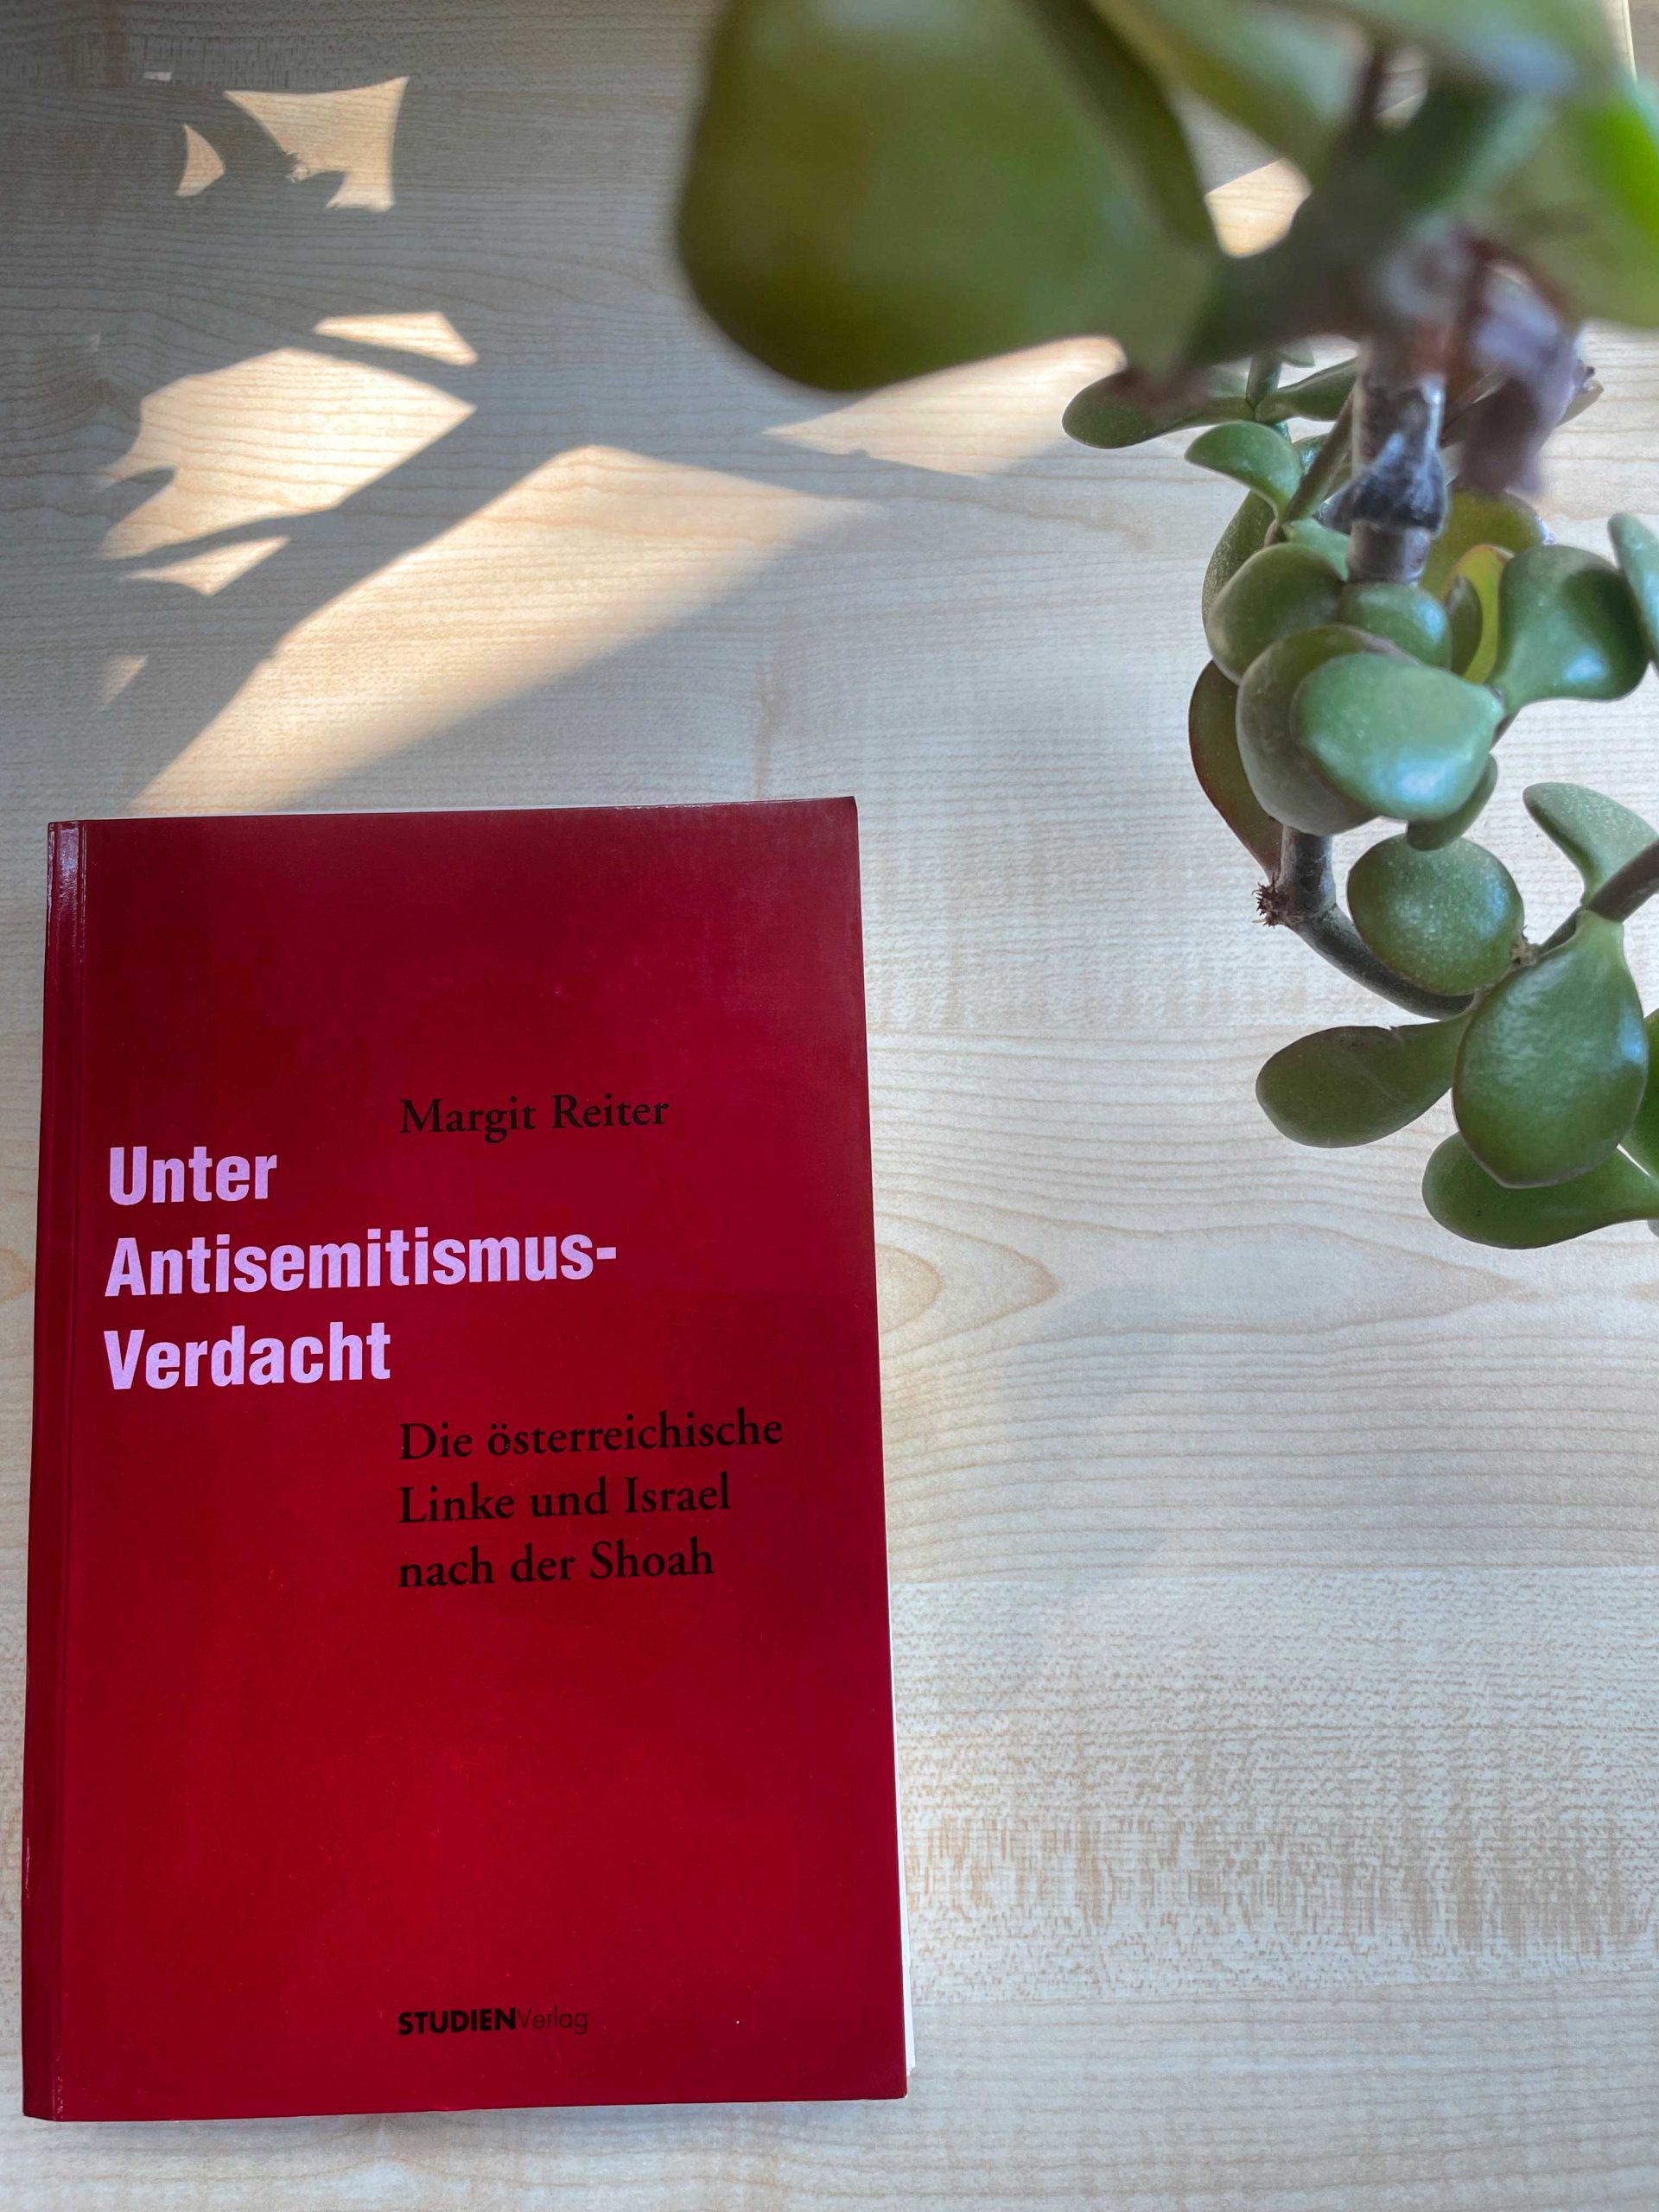 Fotografie des Buches Unter Antisemitismus-Verdacht von Margit Reiter. In der oberen rechten Ecke ist eine Pflanze zu sehen, die in das Bild ragt.